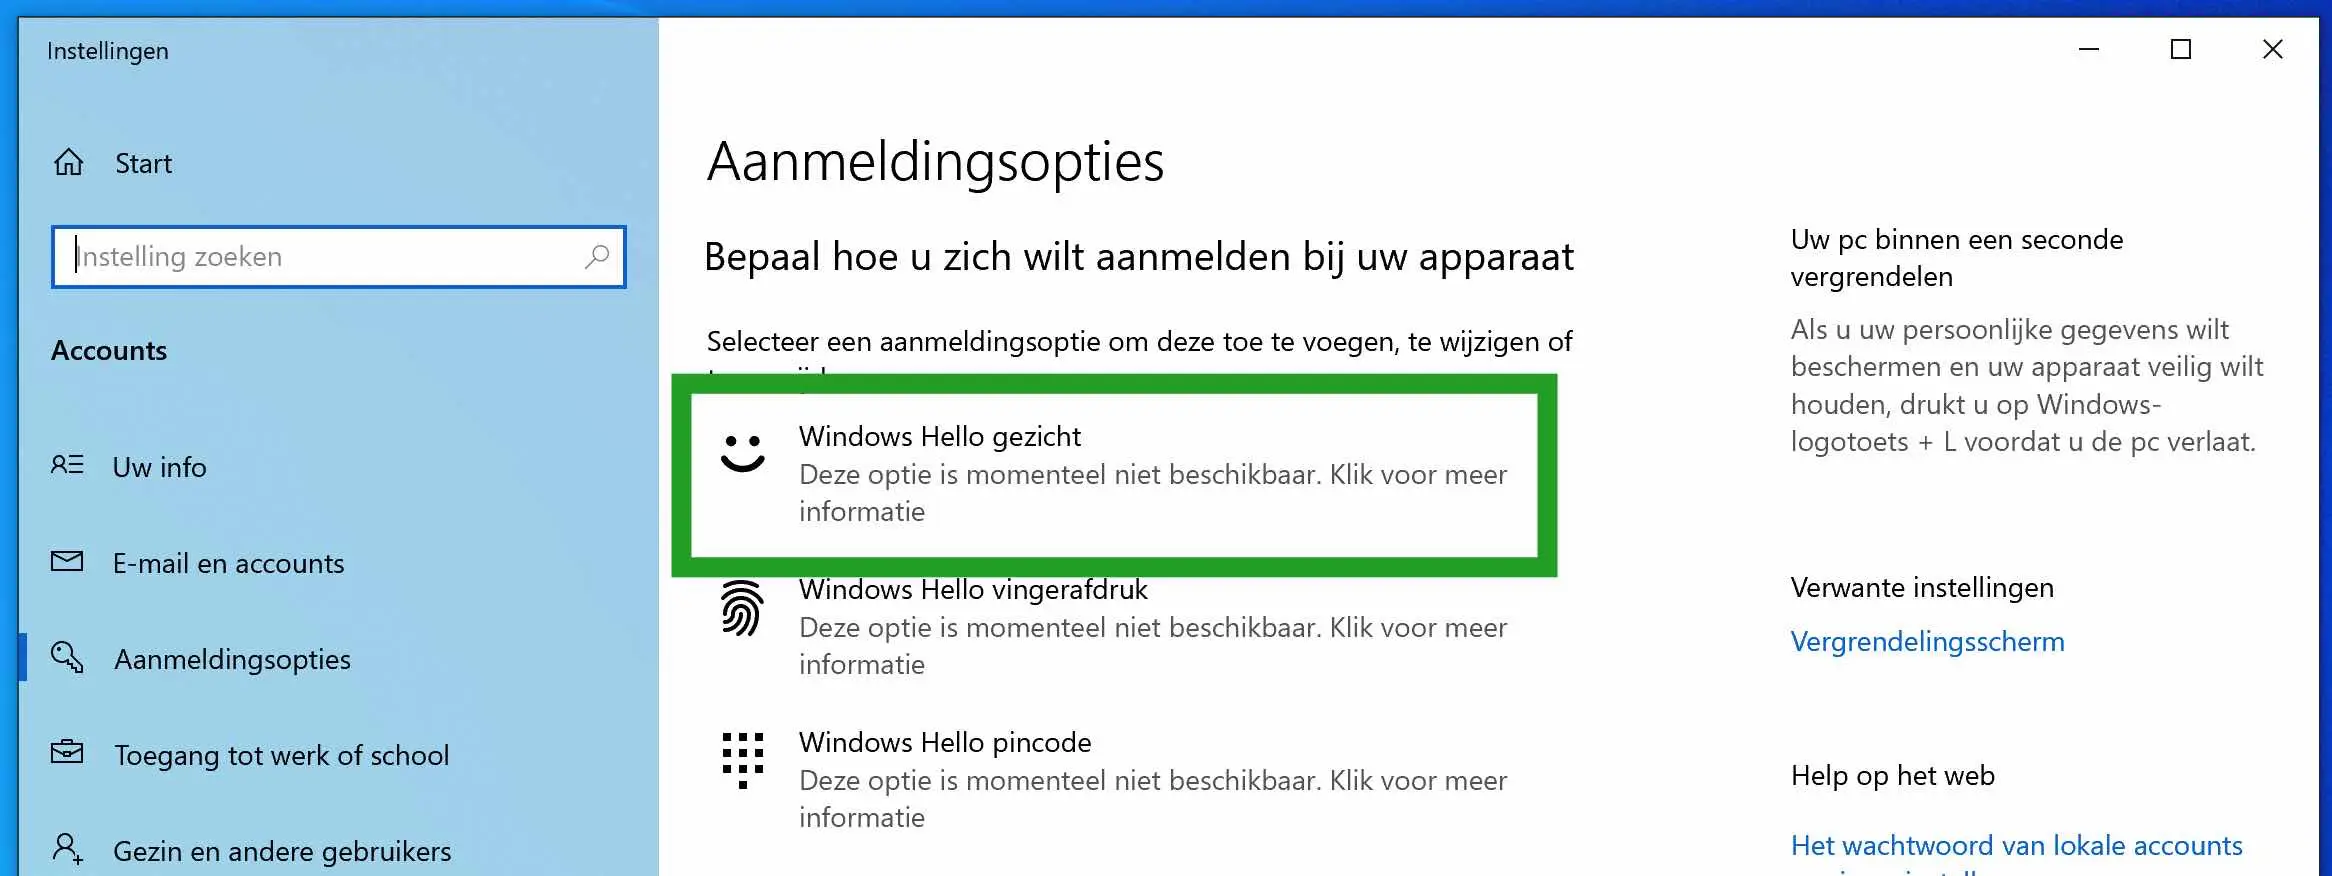 Windows hello is niet beschikbaar